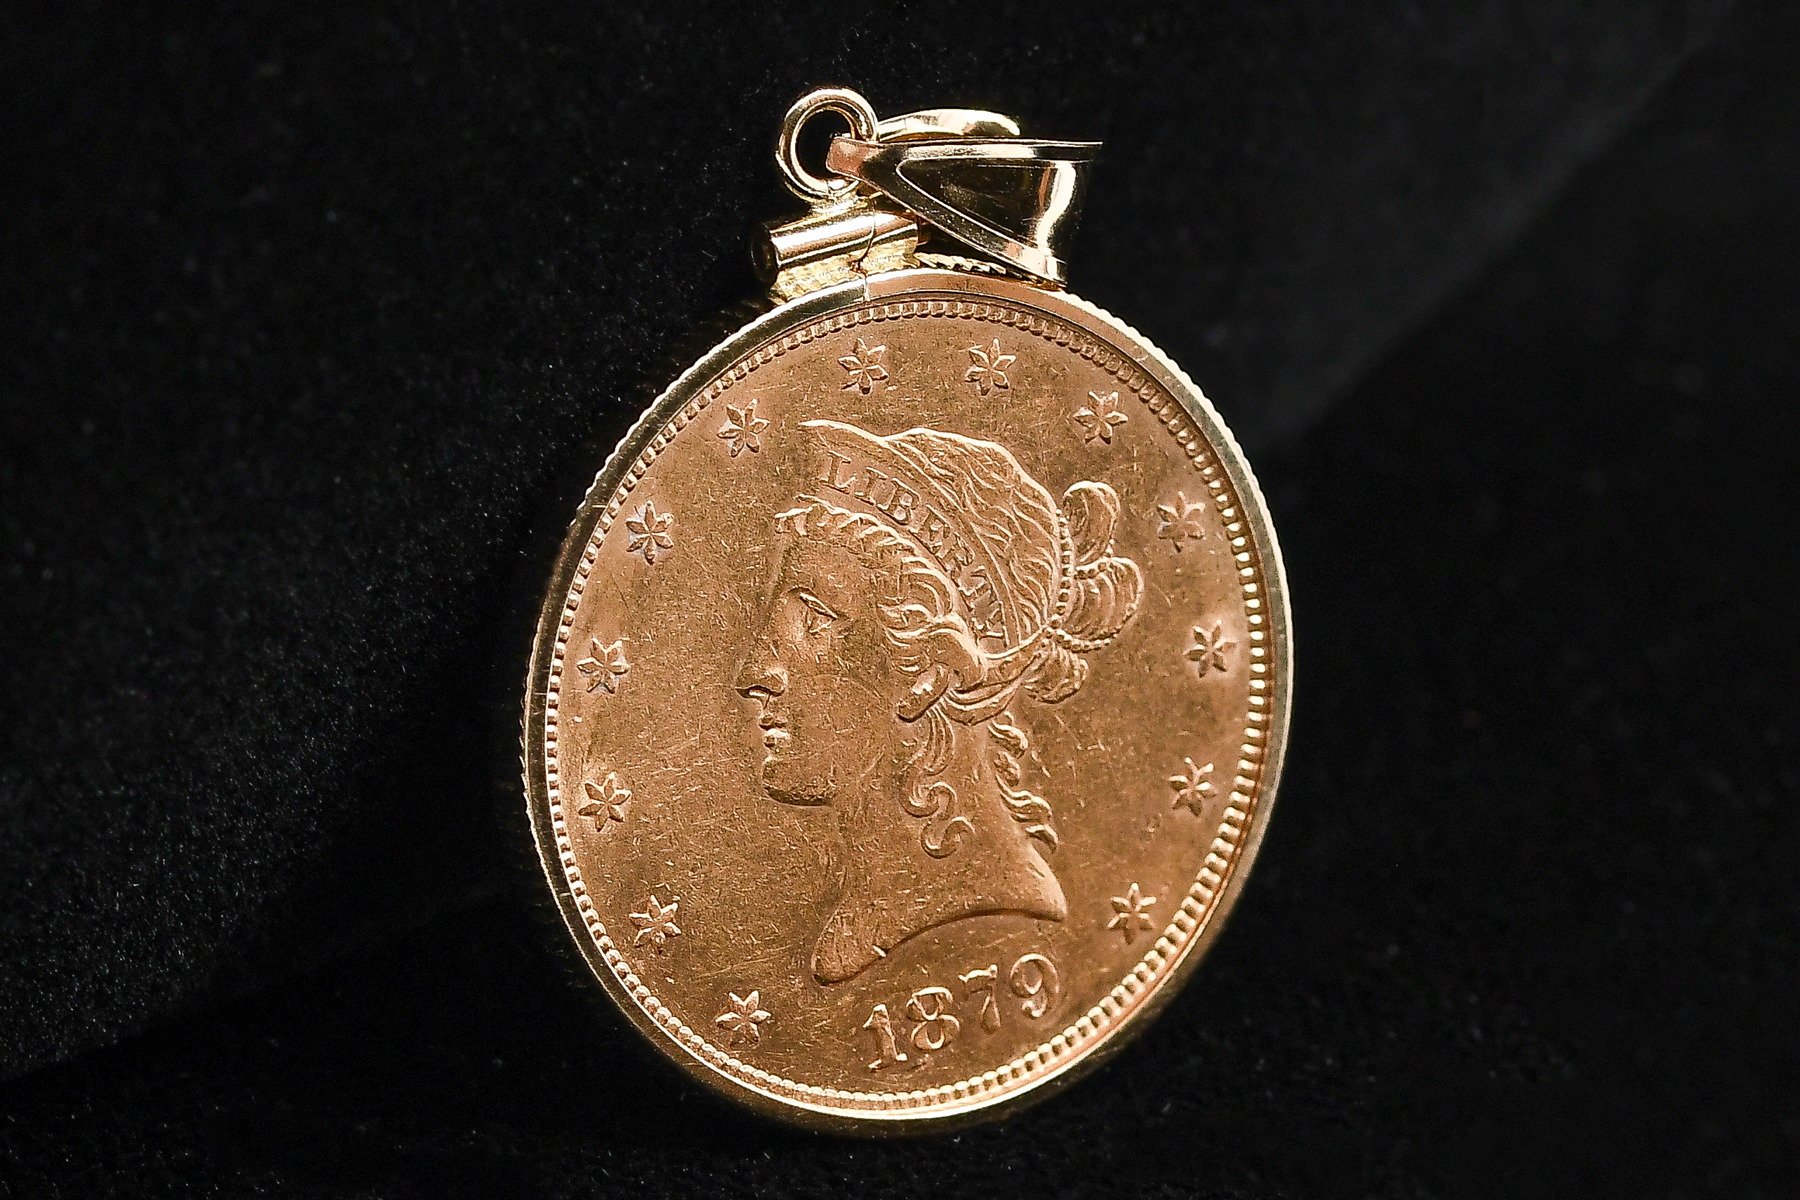 1879 CORONET EAGLE $10 GOLD COIN